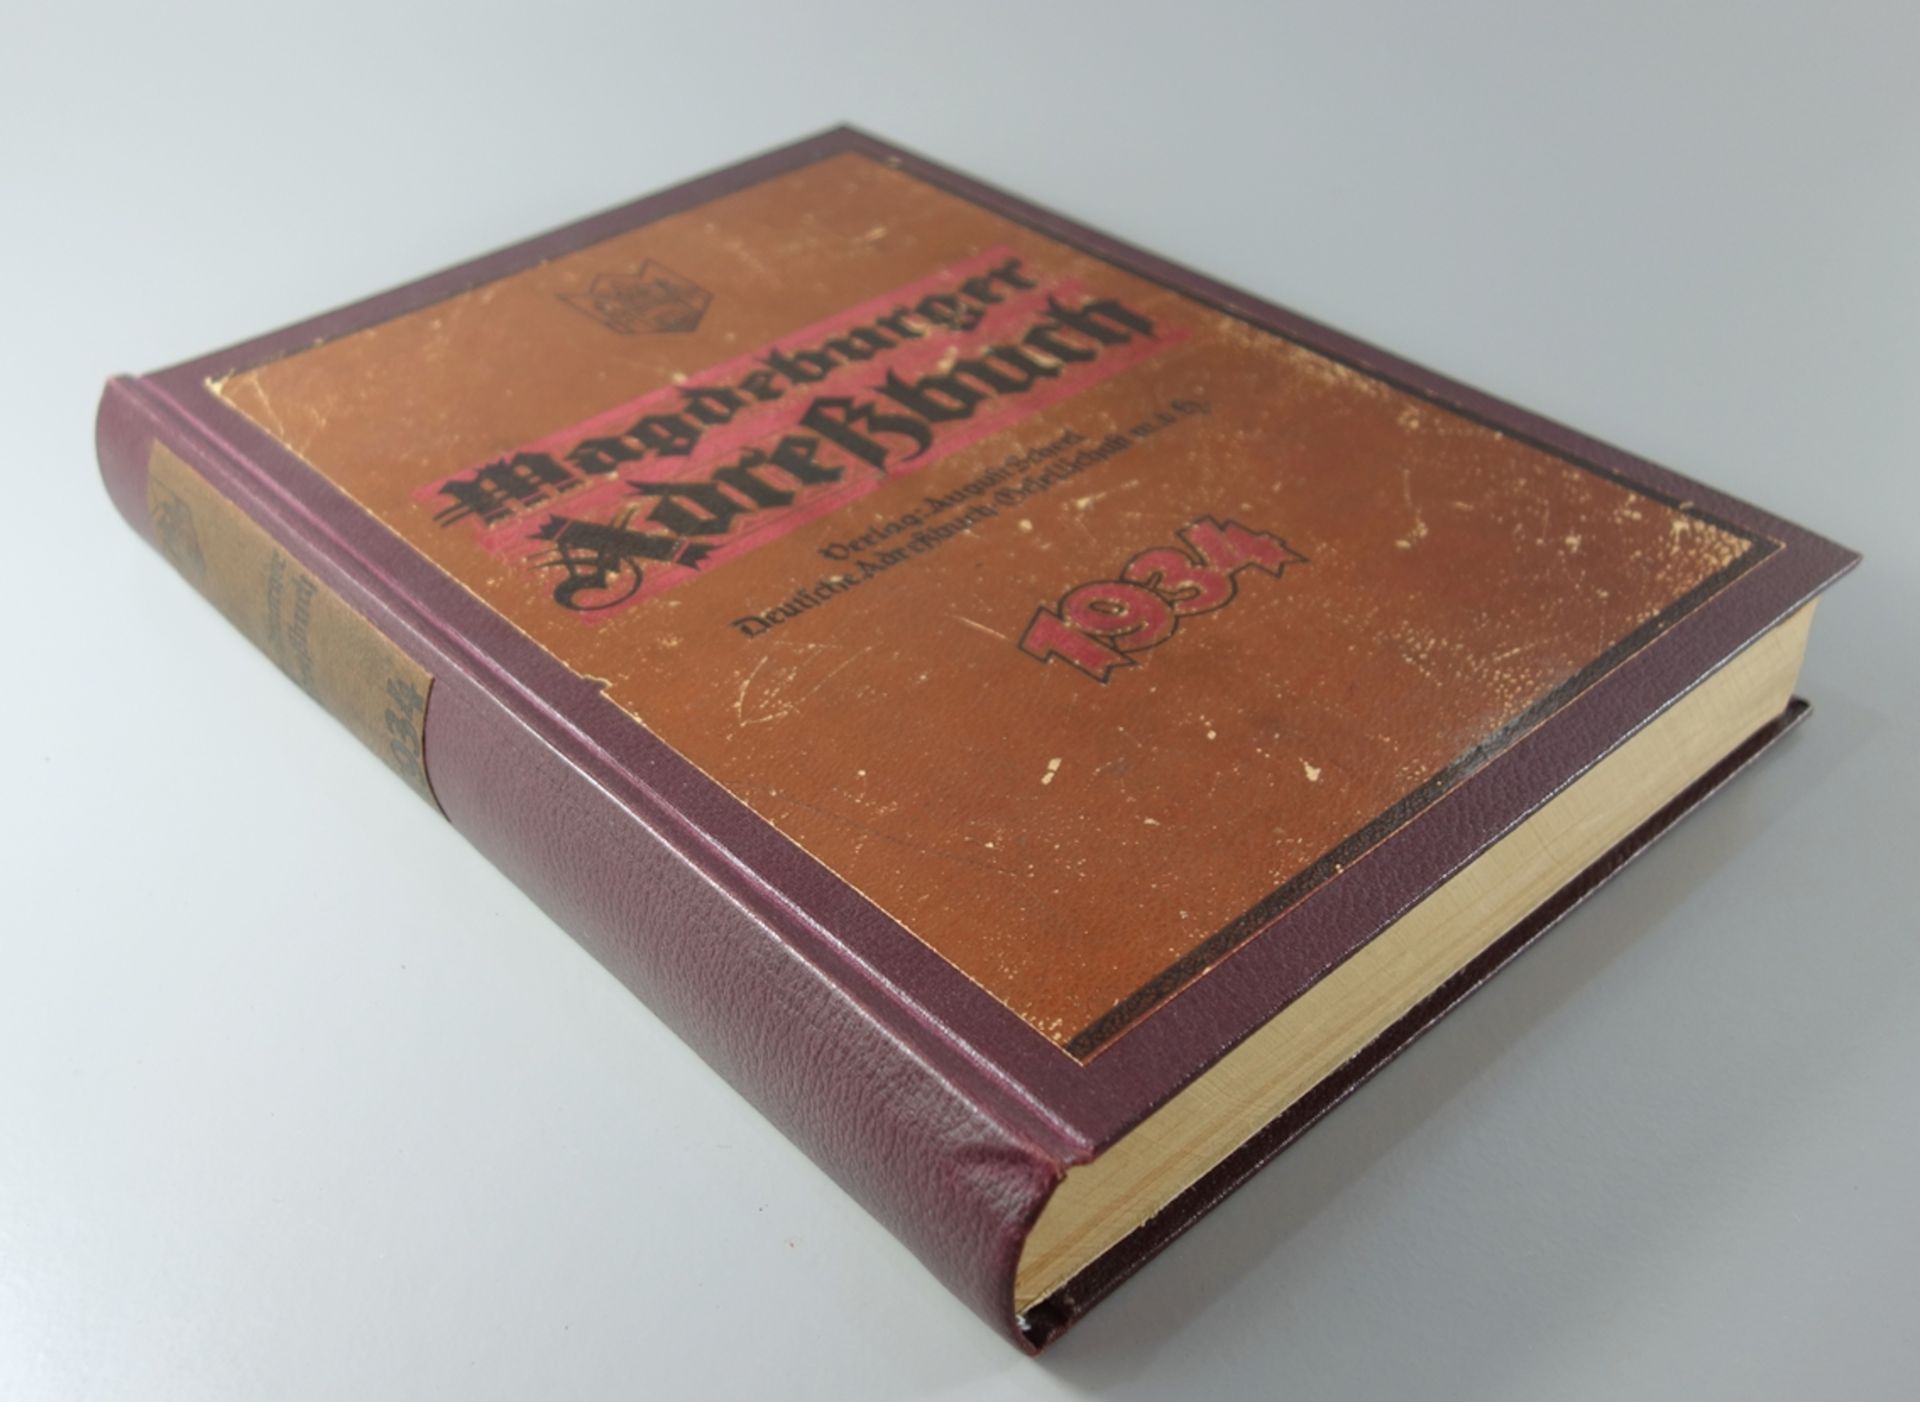 Magdeburger Adreßbuch 1934, Verlag August Scherl, mit Stadtplan, Zust. altersentsprechend 1-2 - Bild 2 aus 3